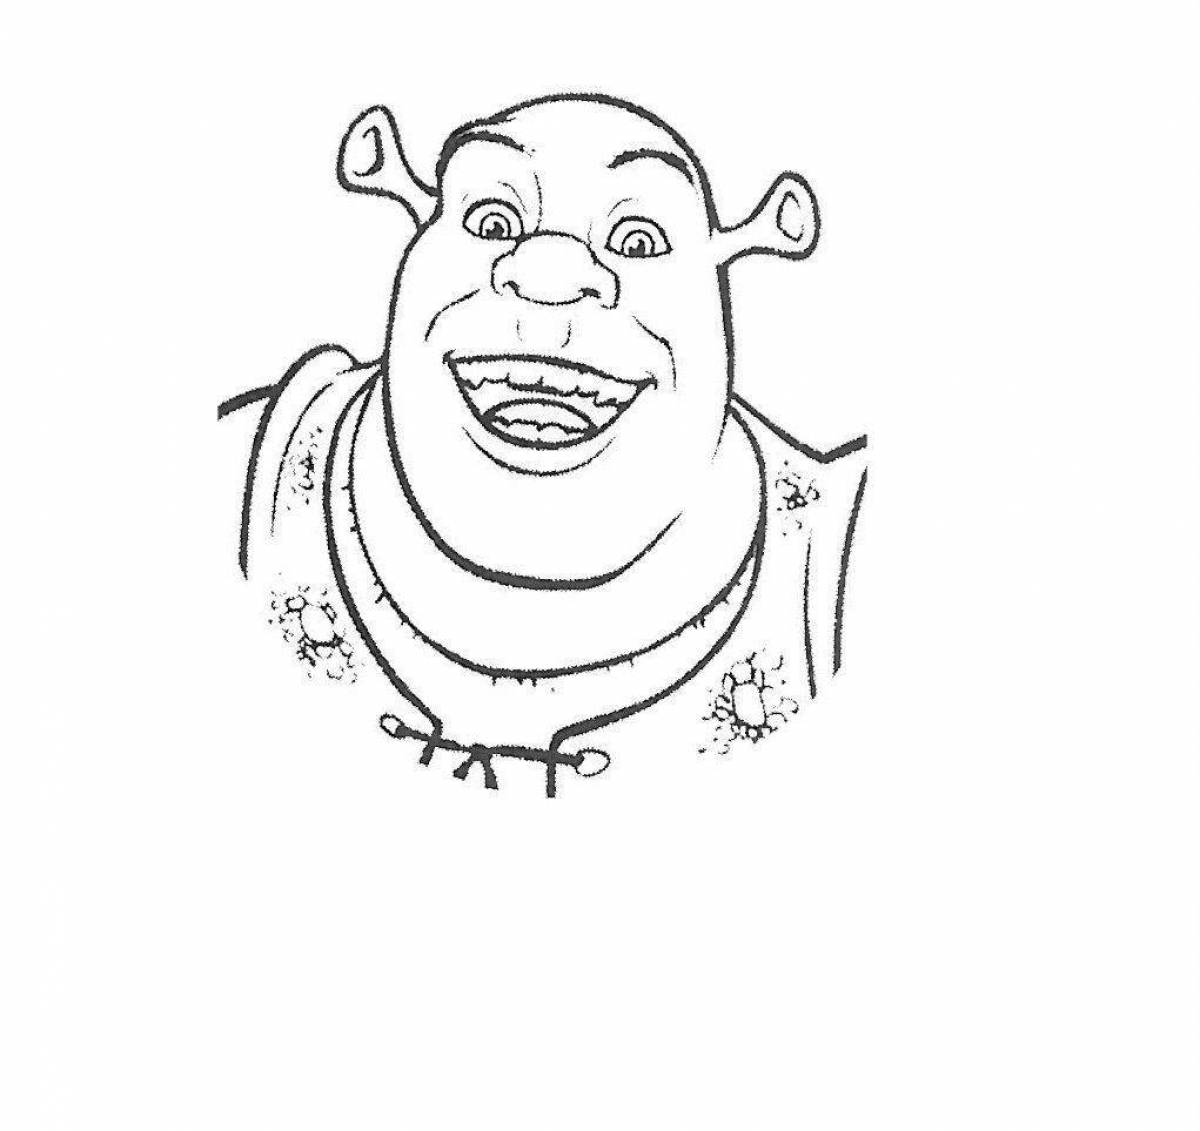 Cheerful Shrek coloring book